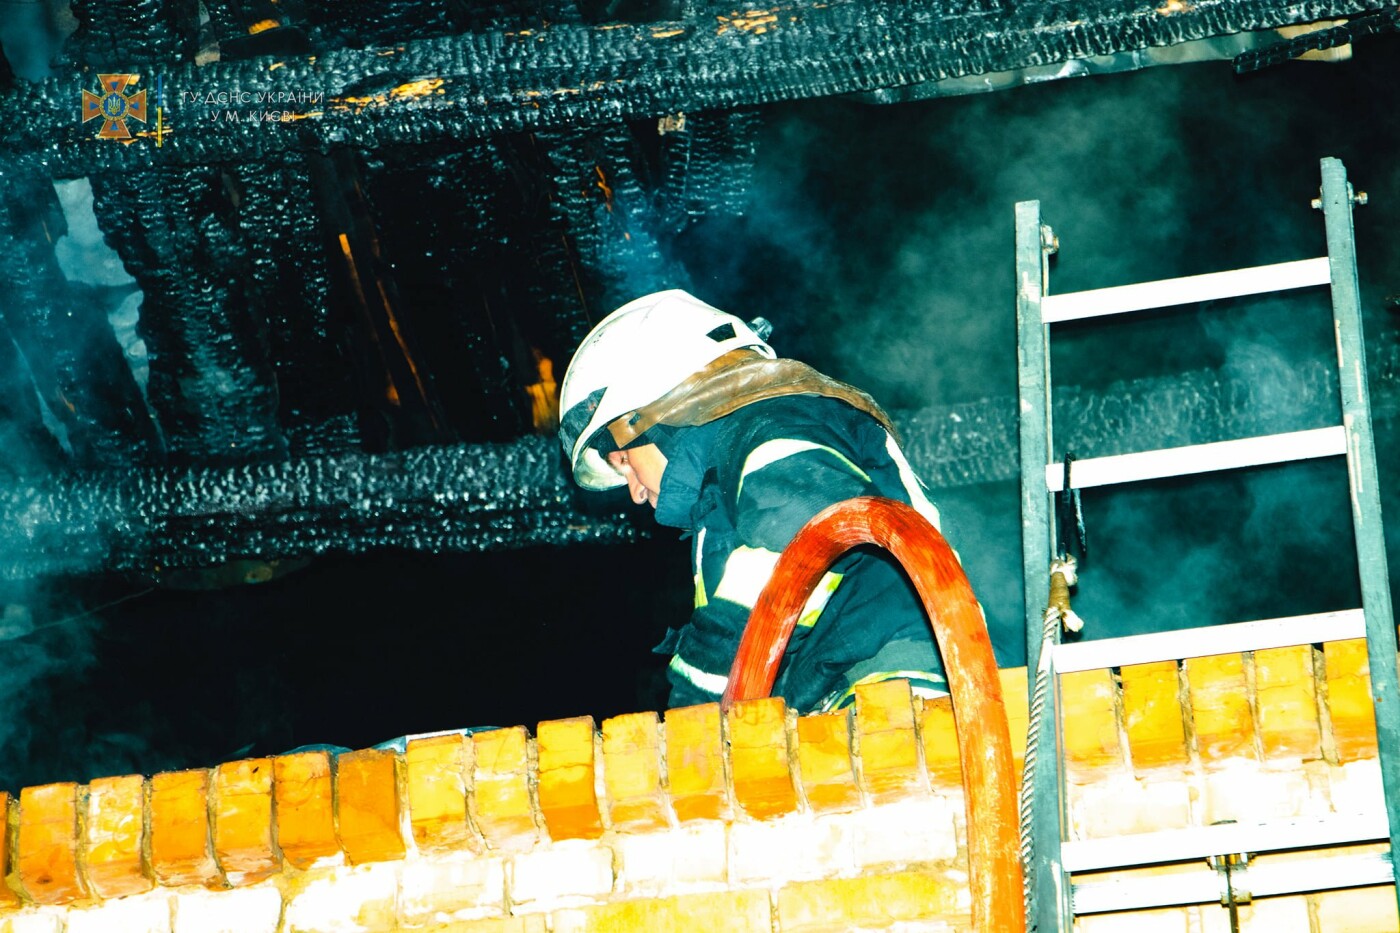 В Святошинском районе Киева сгорел дом и 3 автомобиля: мужчина госпитализирован в тяжелом состоянии, - ФОТО